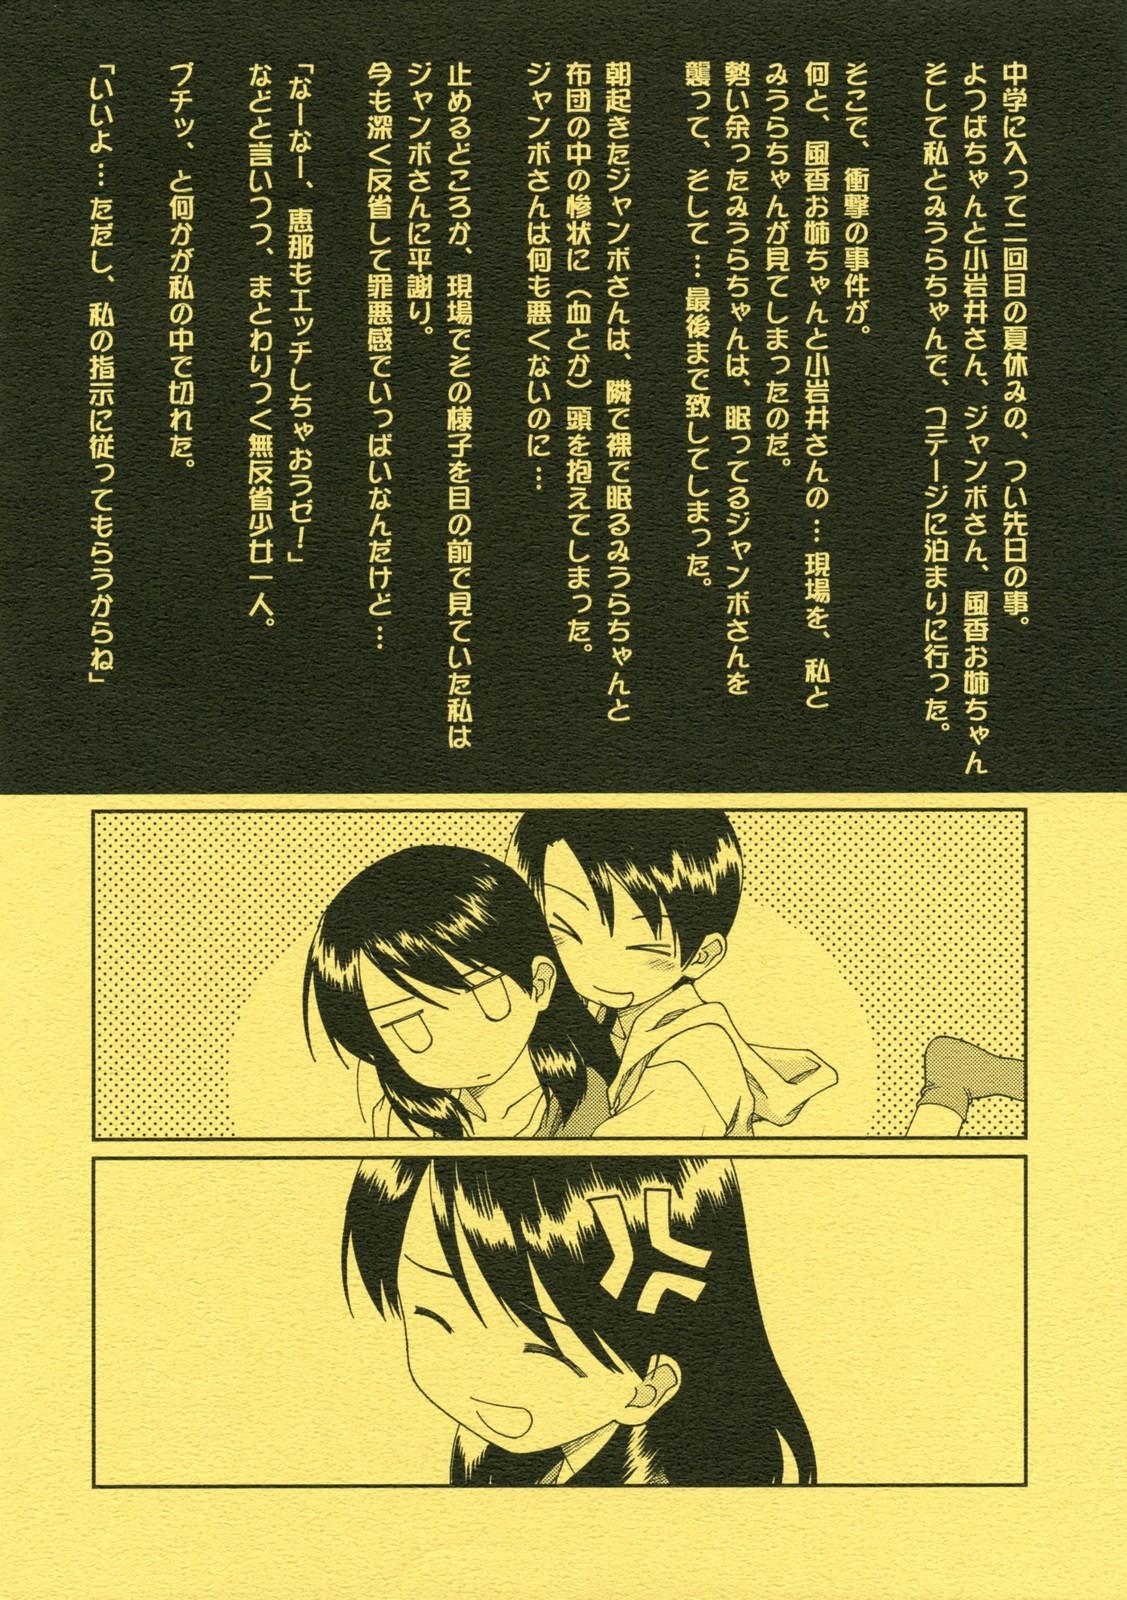 Dicks Miurato - Yotsubato Blackdick - Page 2